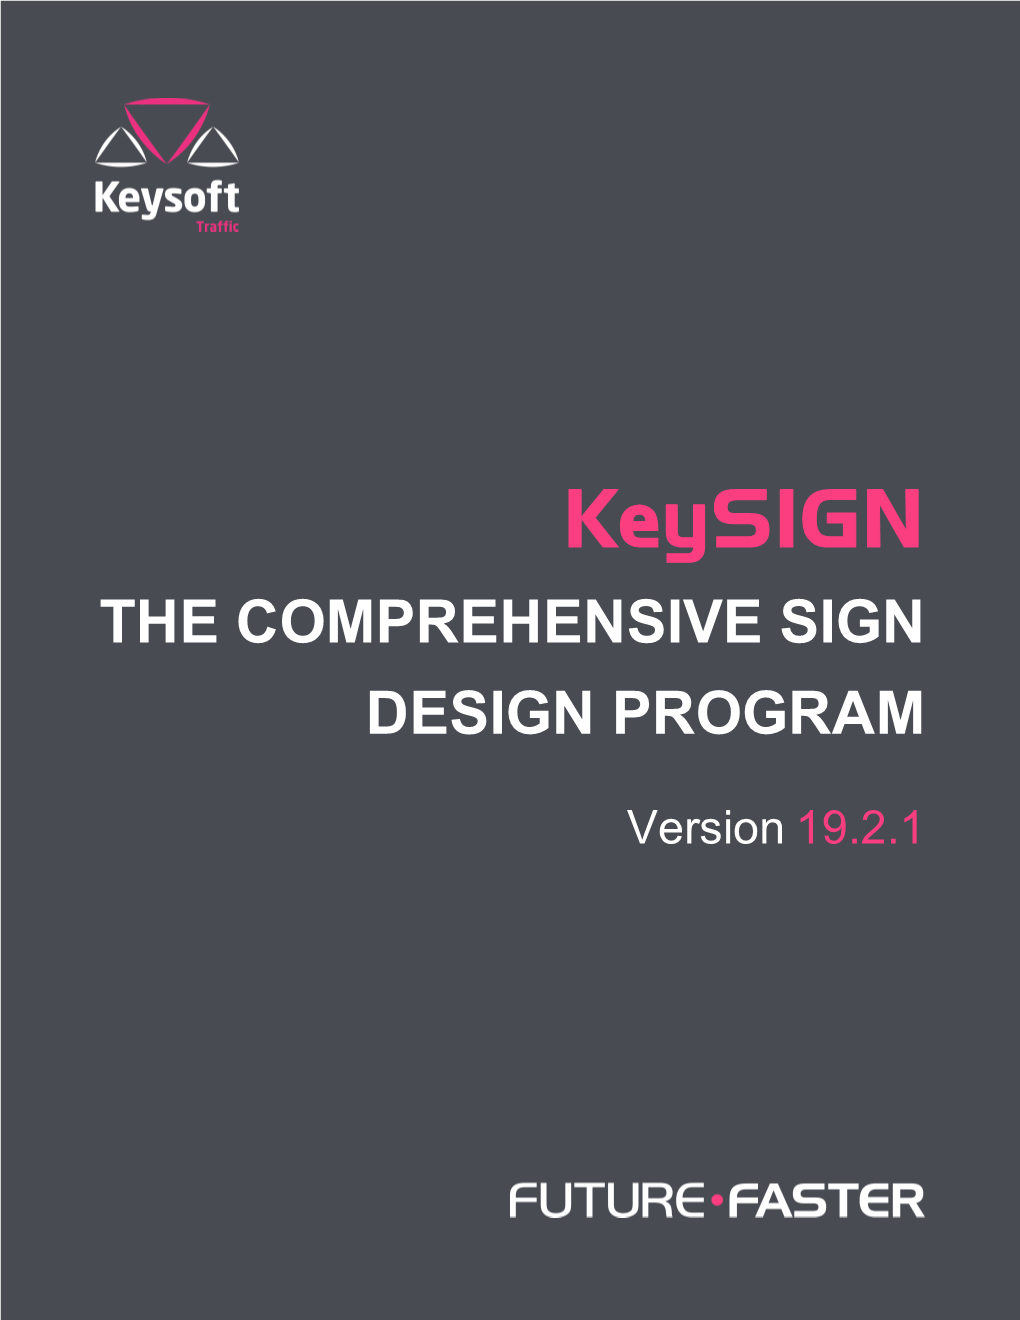 Keysign the COMPREHENSIVE SIGN DESIGN PROGRAM